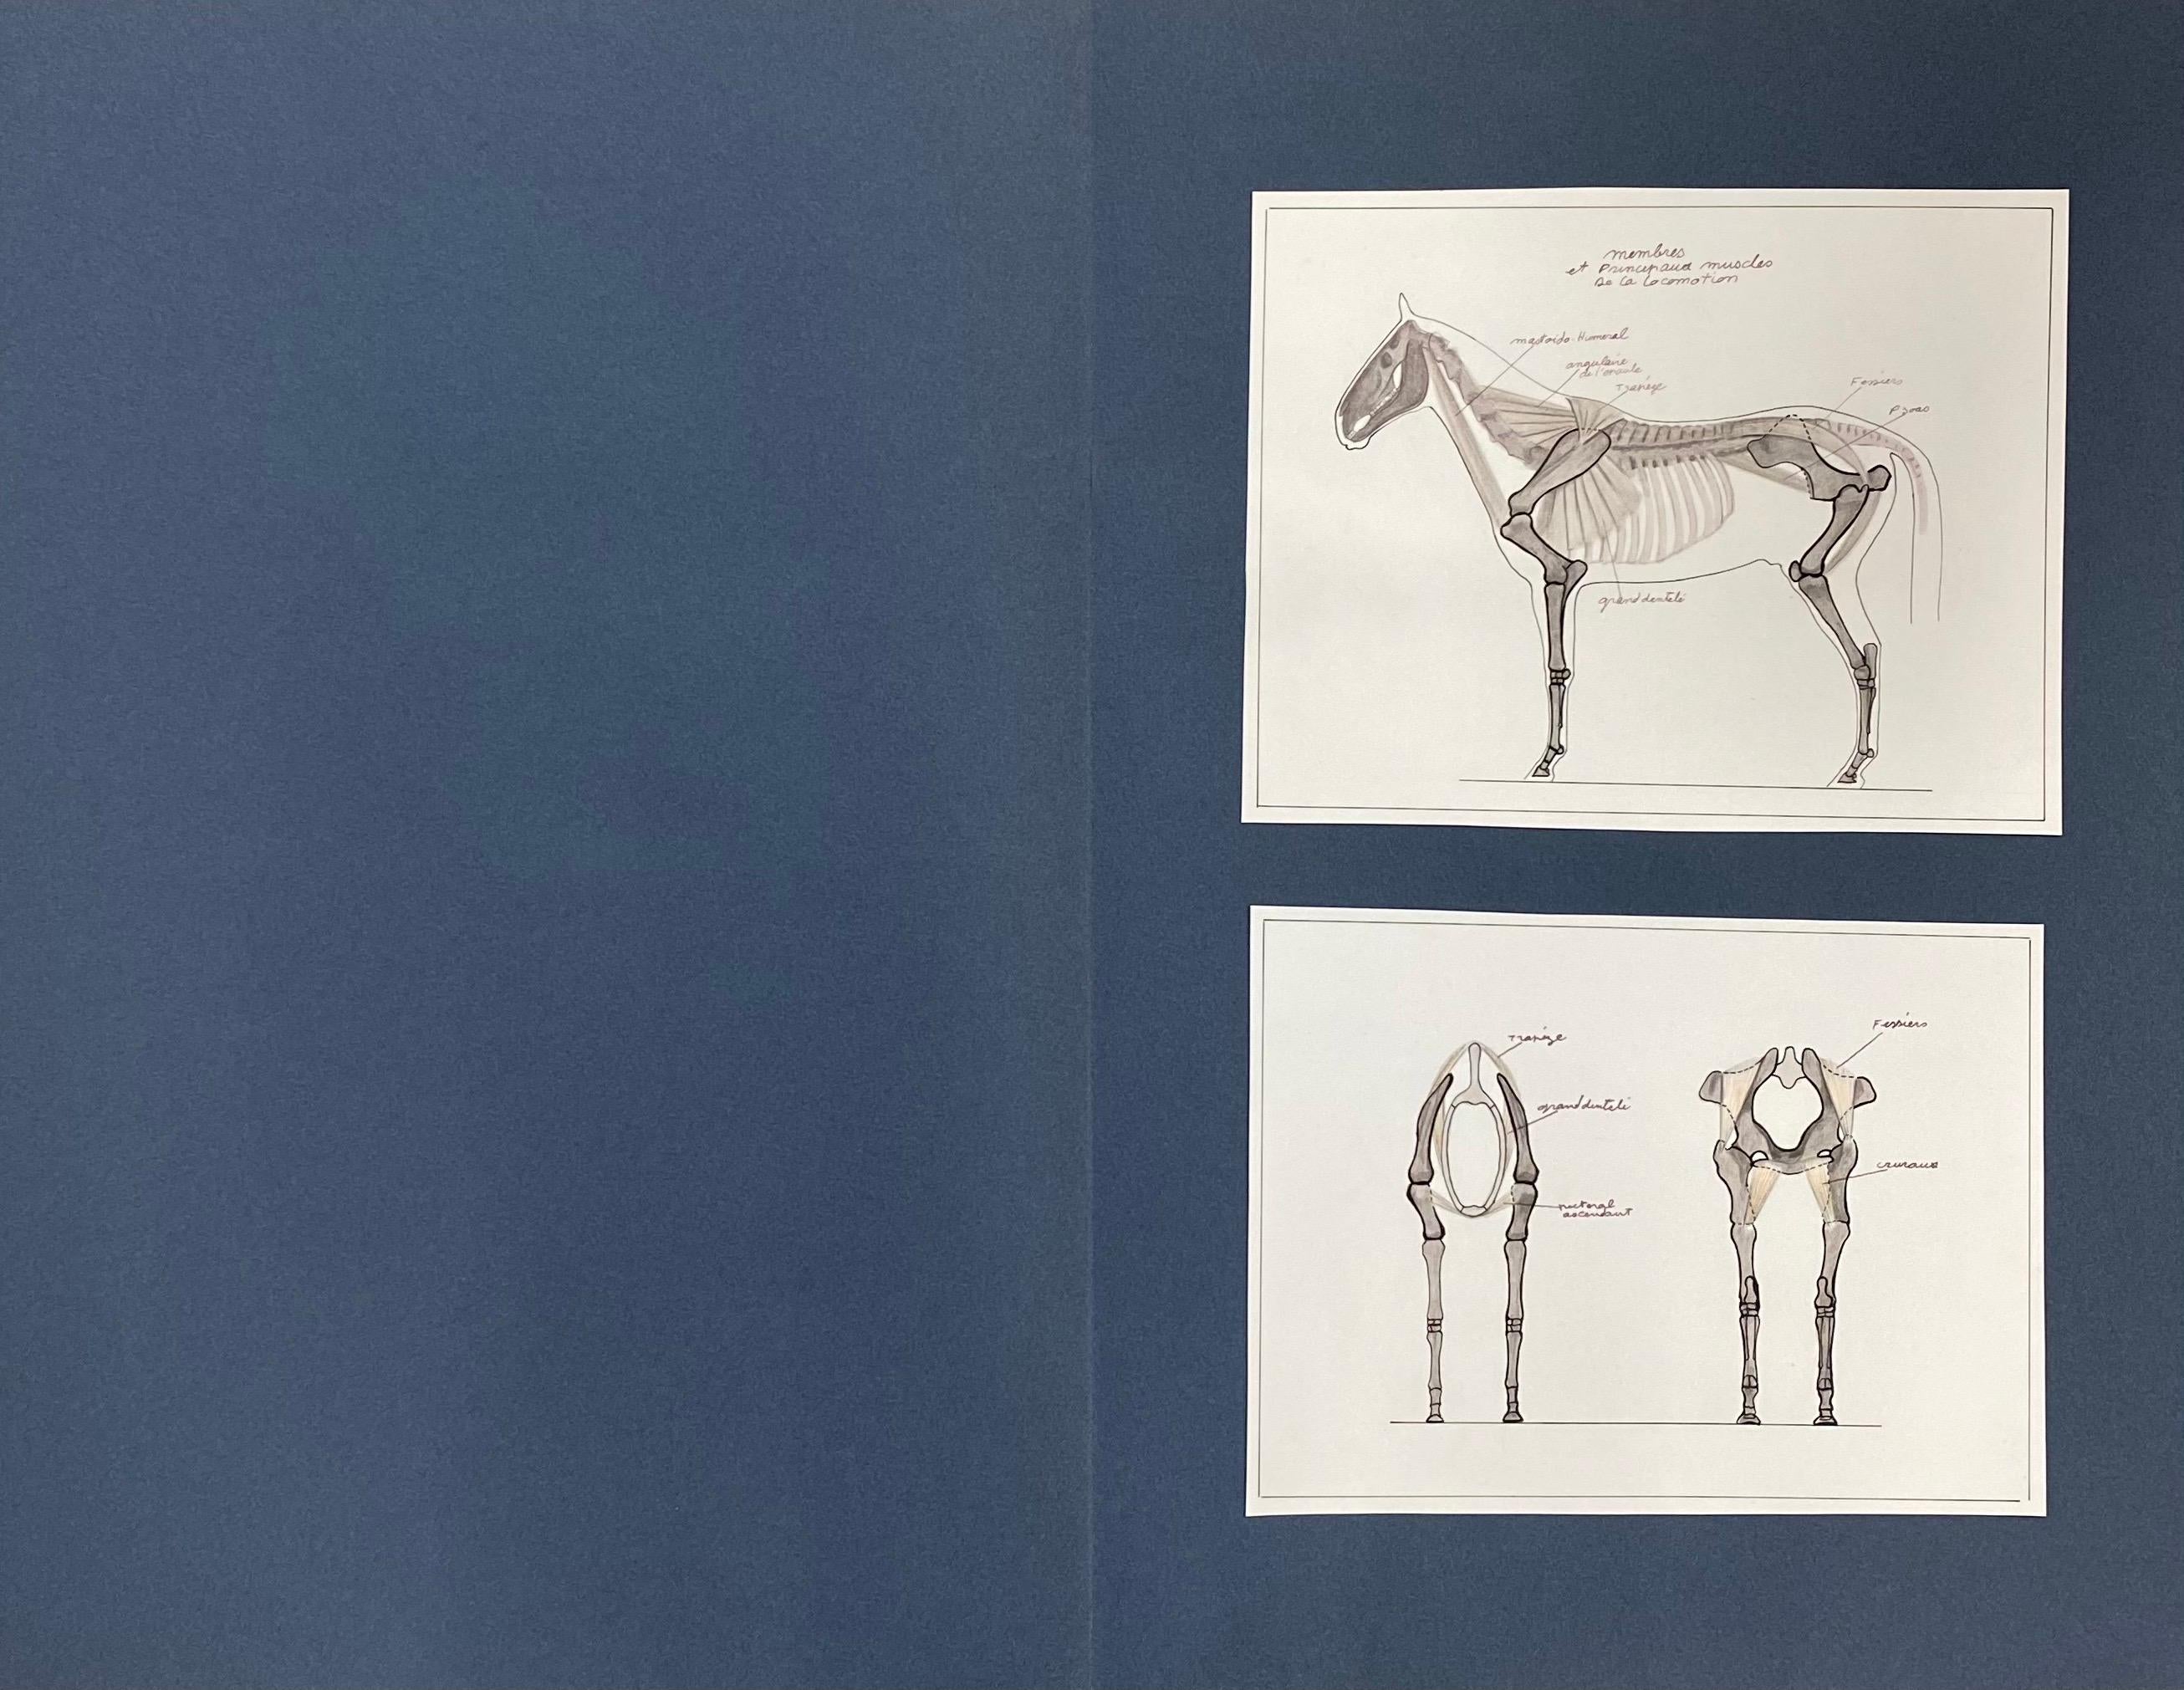 Des dessins d'un cheval - étude d'anatomie équestre française d'origine - Art de Robert Ladou